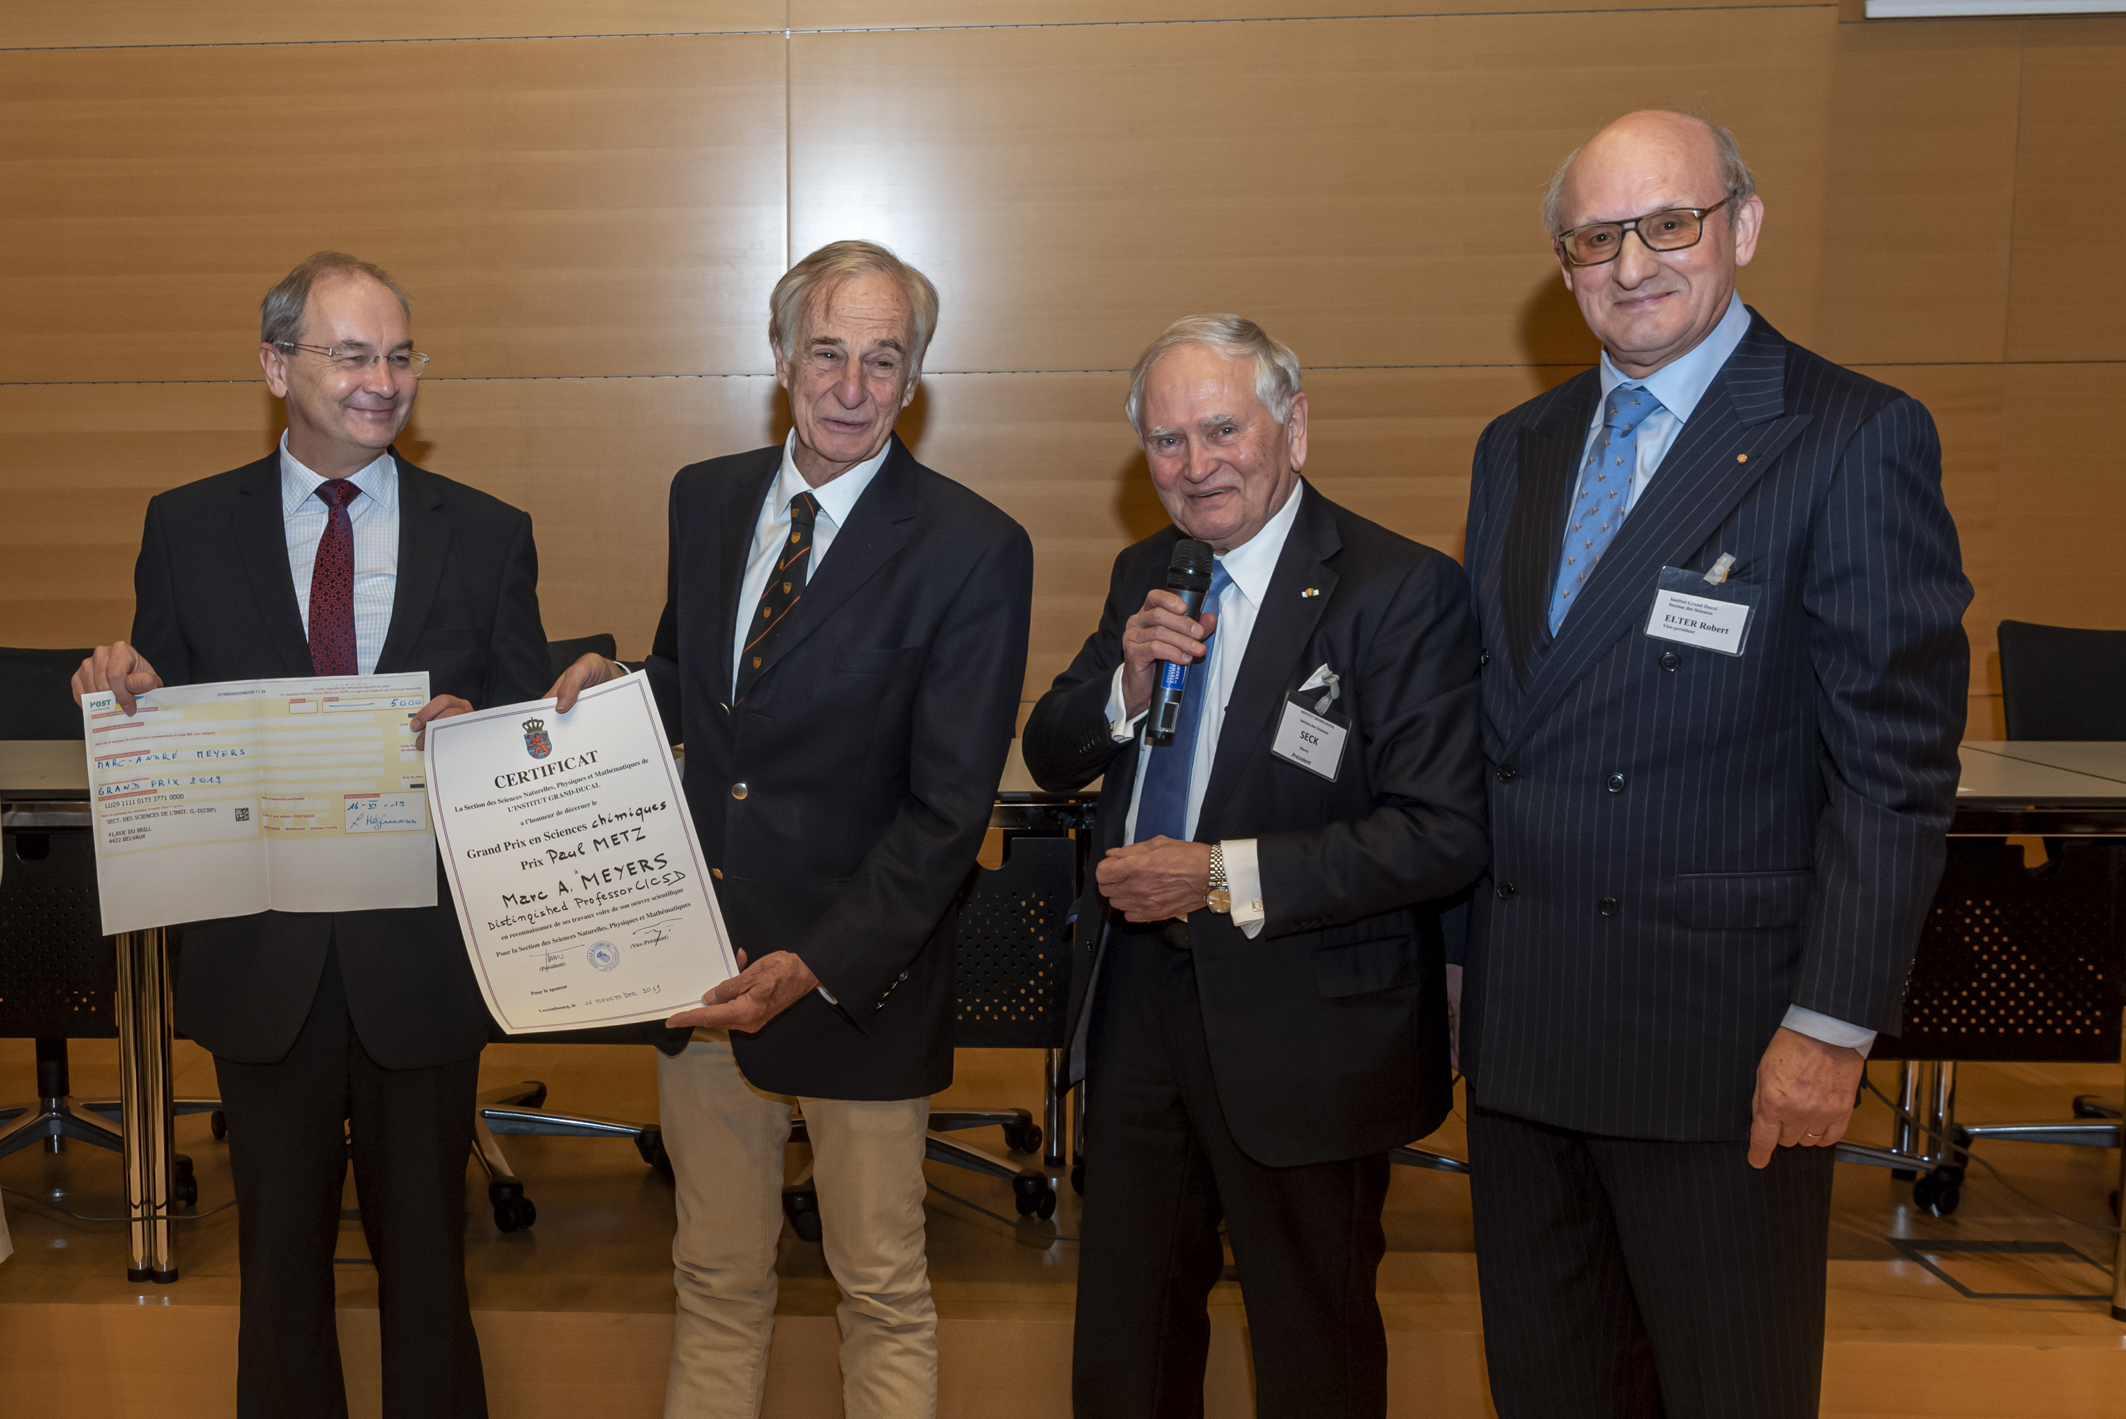 Grand Prix 2019 en sciences chimiques de l’Institut grand-ducal / Prix Paul METZ : Professeur Dr Marc A. MEYERS (University of California / San Diego) / lauréat